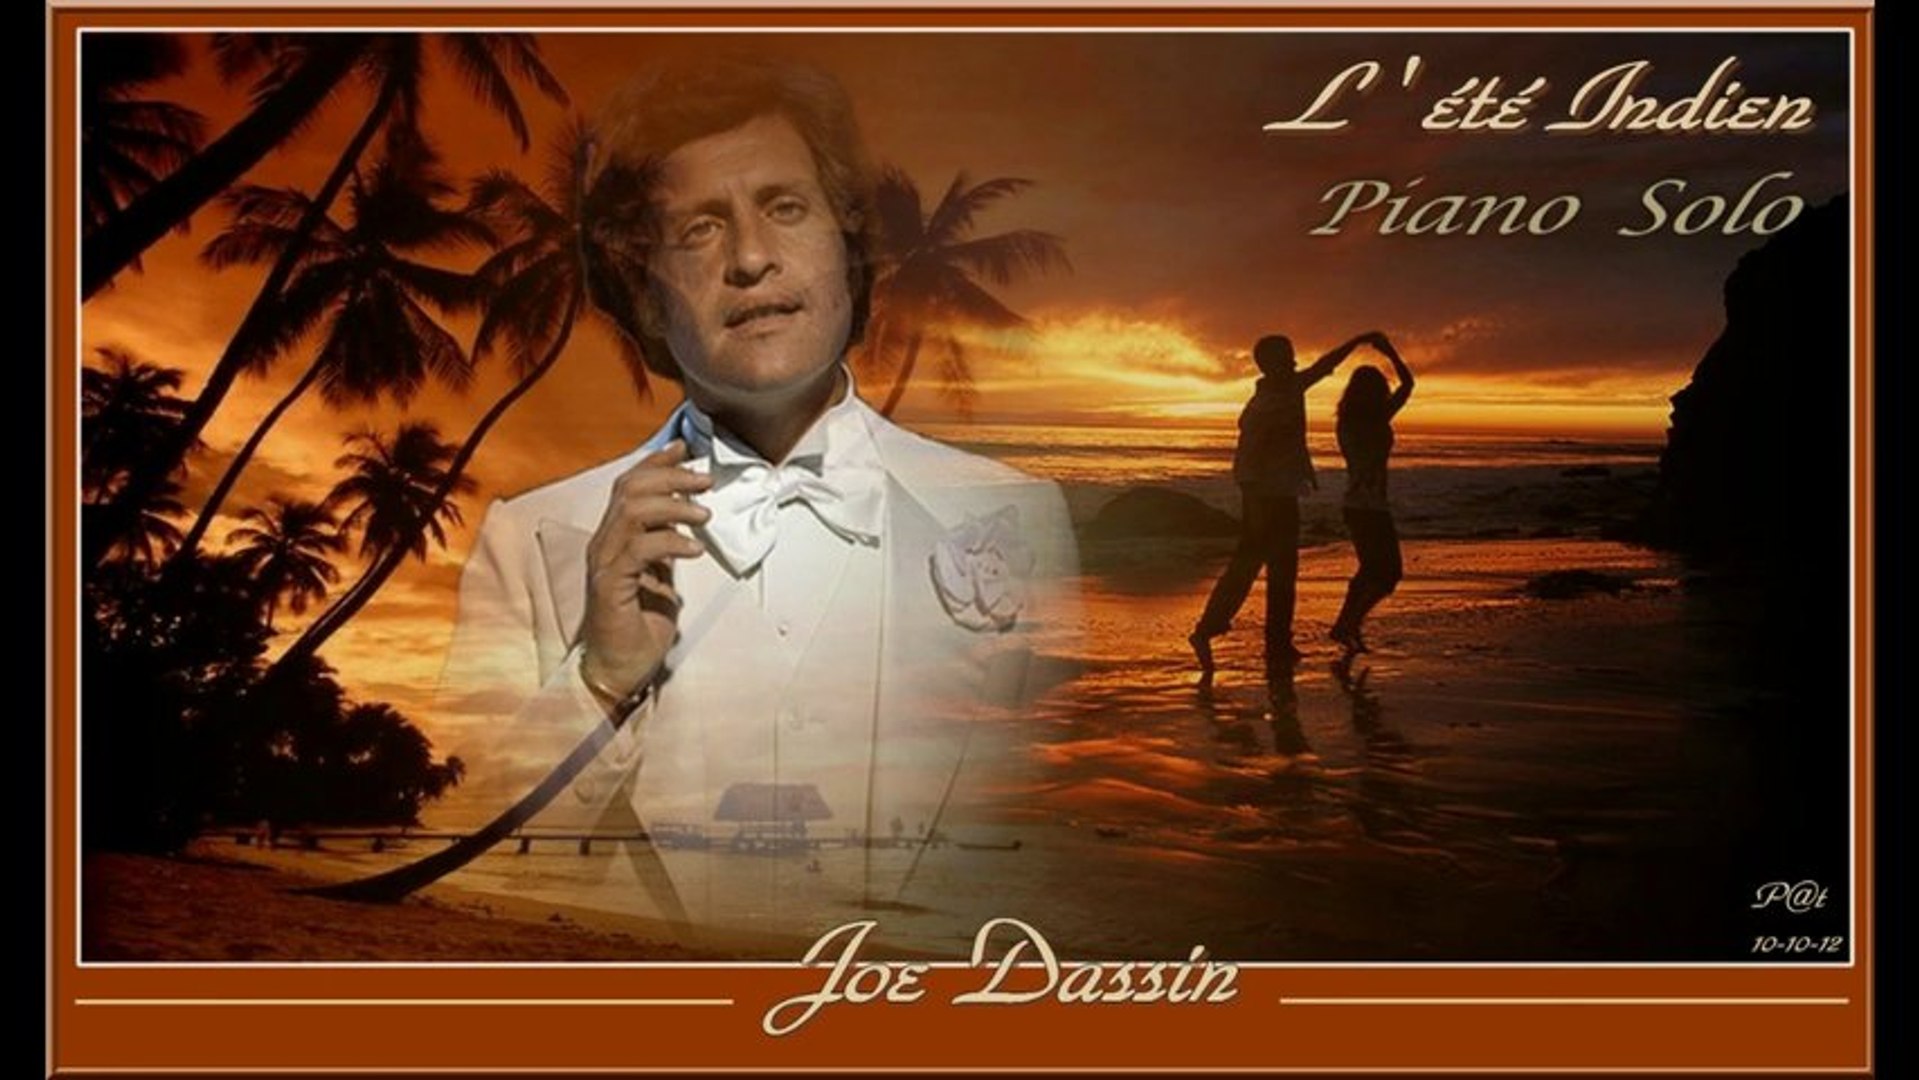 Песни л любви. Джо Дассен. Джо Дассен - бабье лето (l'eté Indien). Джо Дассен 20 августа. Джо Дассен фото.